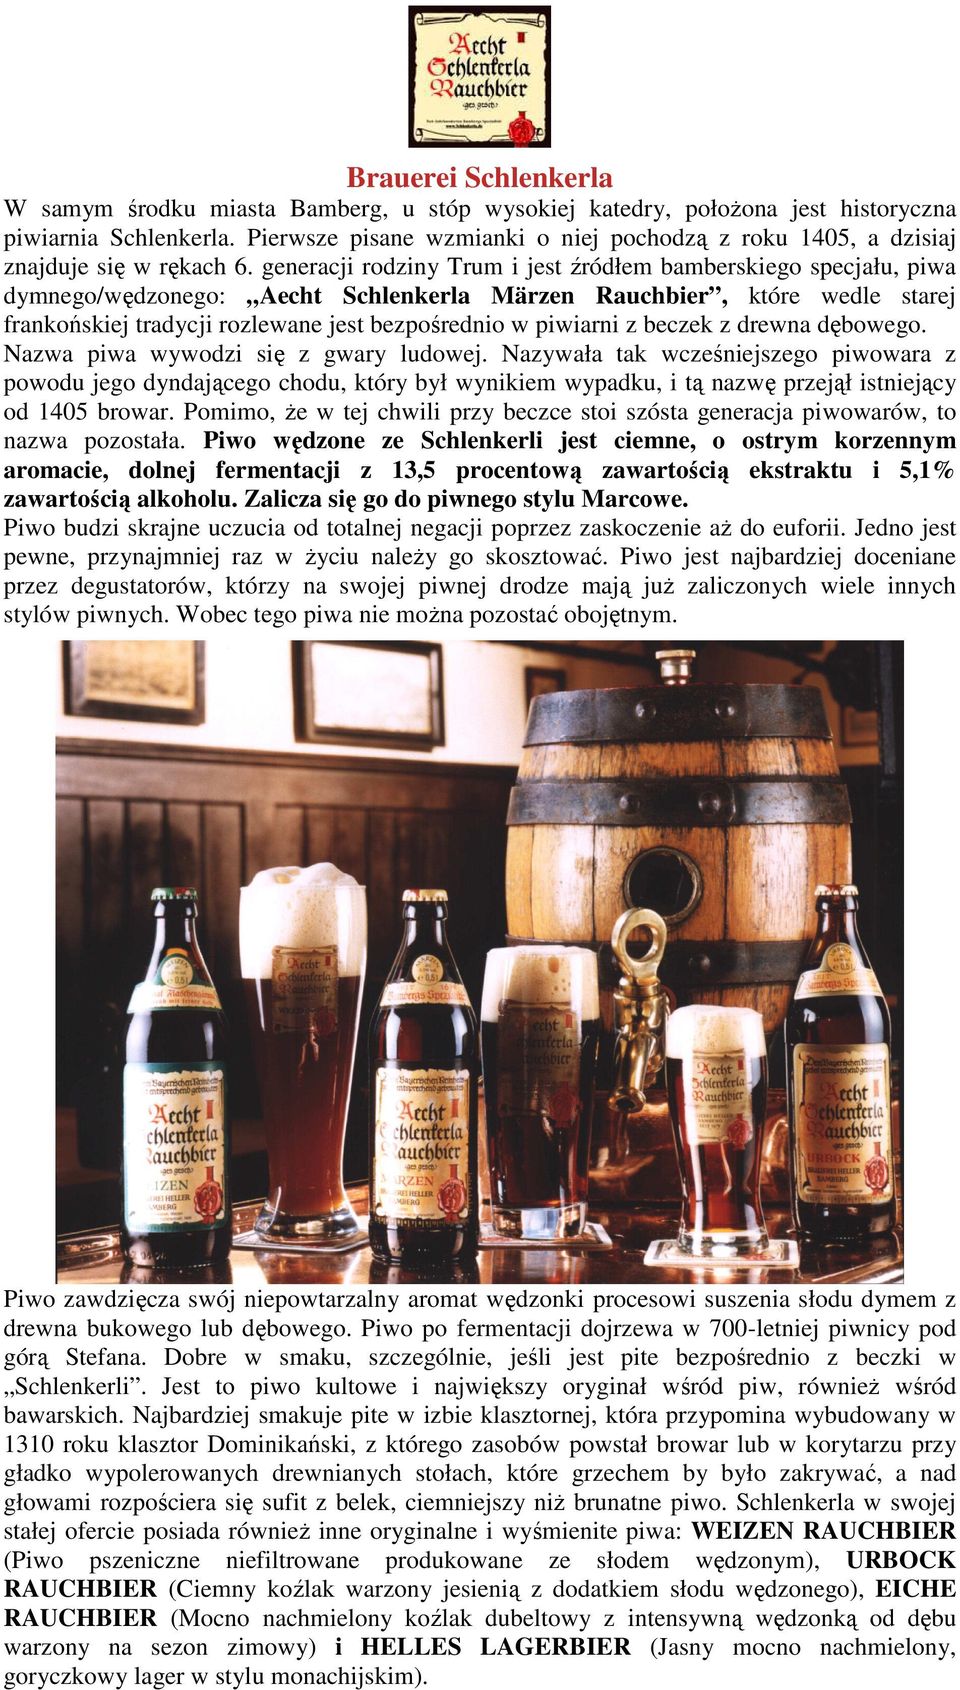 generacji rodziny Trum i jest źródłem bamberskiego specjału, piwa dymnego/wędzonego: Aecht Schlenkerla Märzen Rauchbier, które wedle starej frankońskiej tradycji rozlewane jest bezpośrednio w